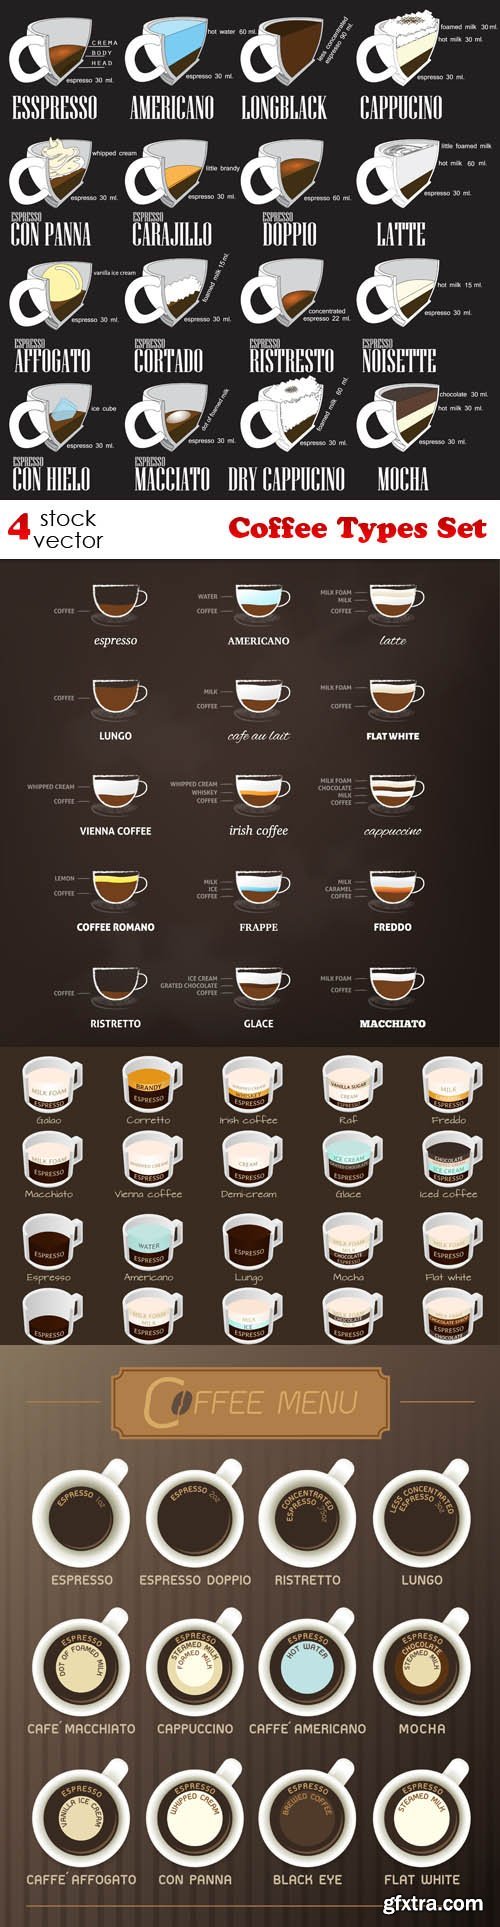 Vectors - Coffee Types Set